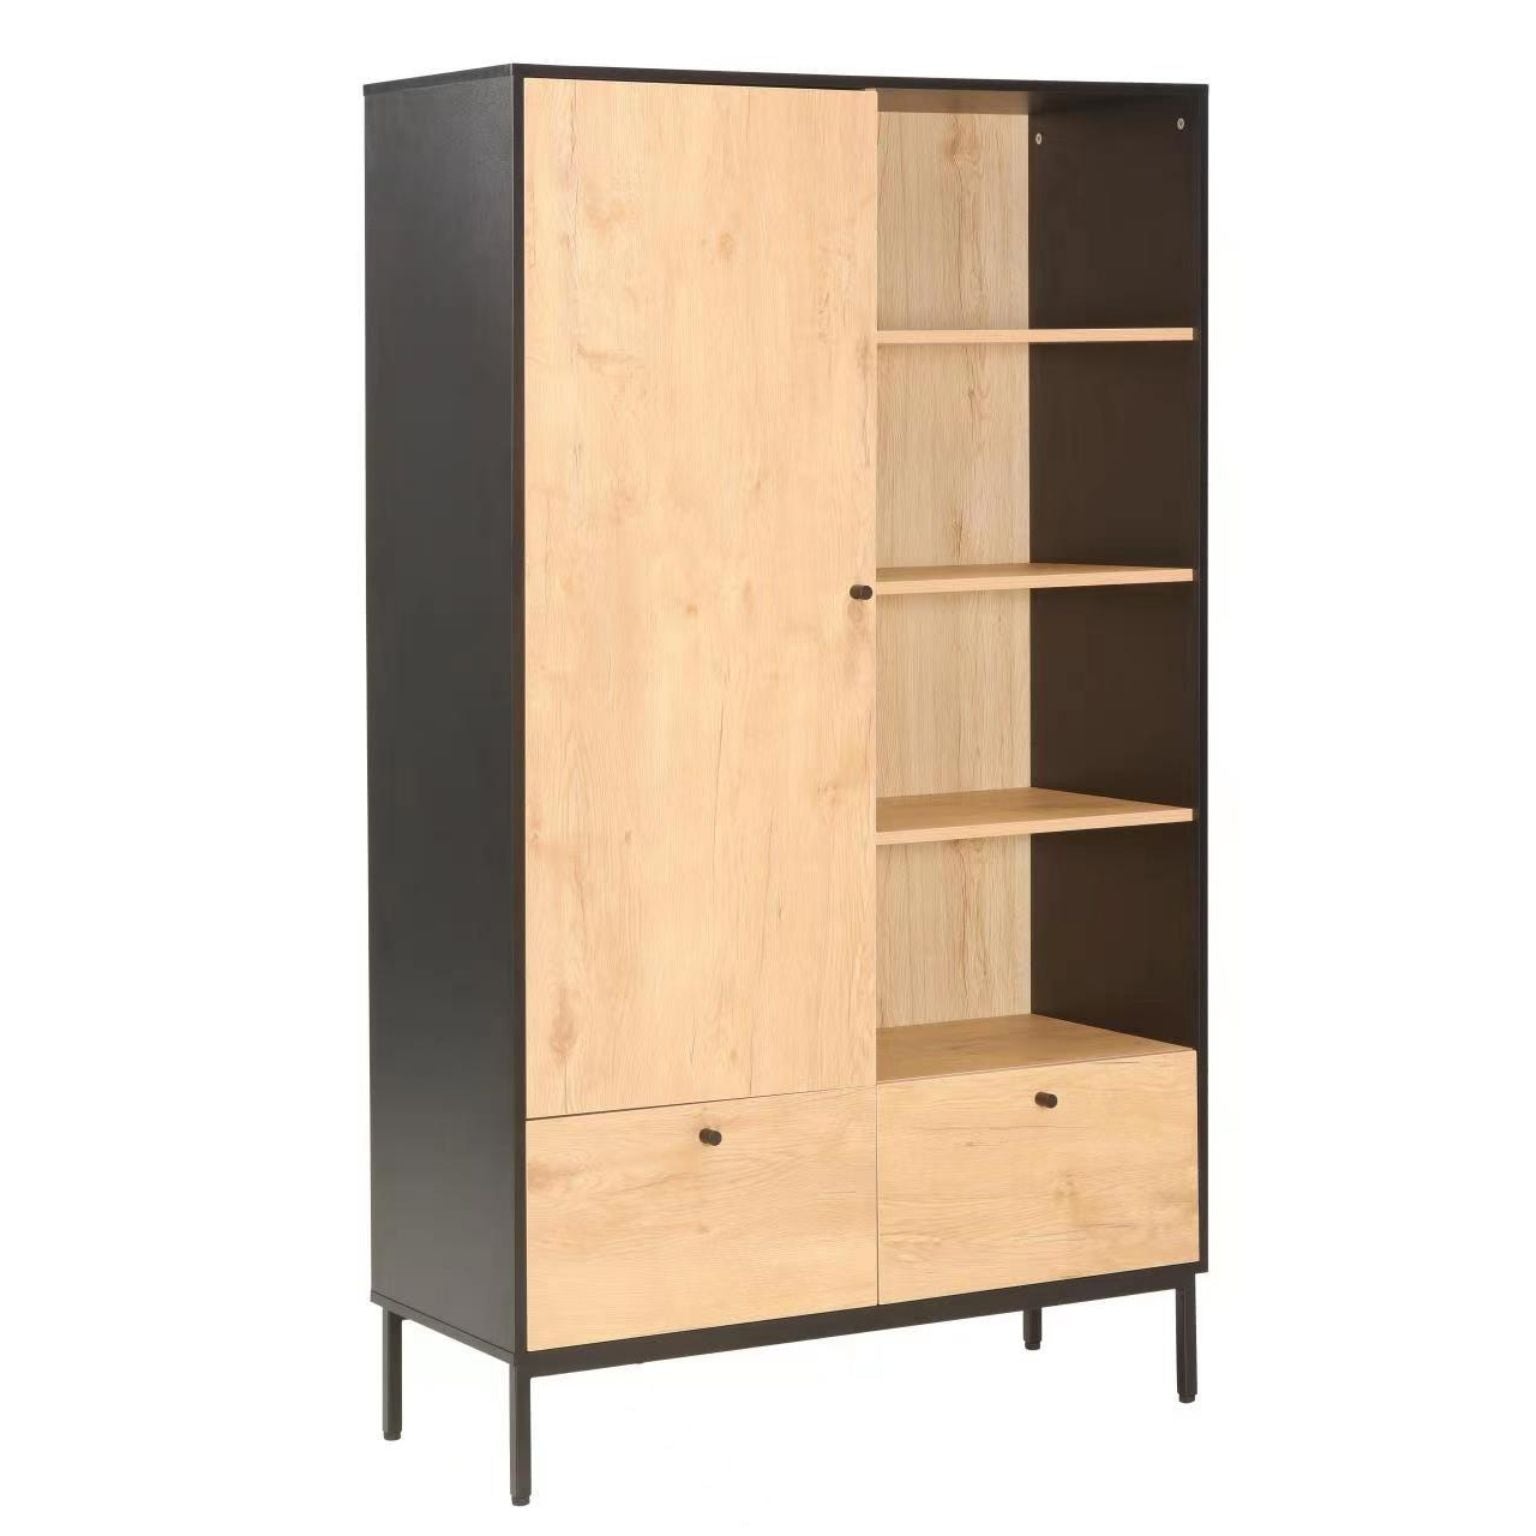 jude armoire wardrobe cabinet and shelf steel legs